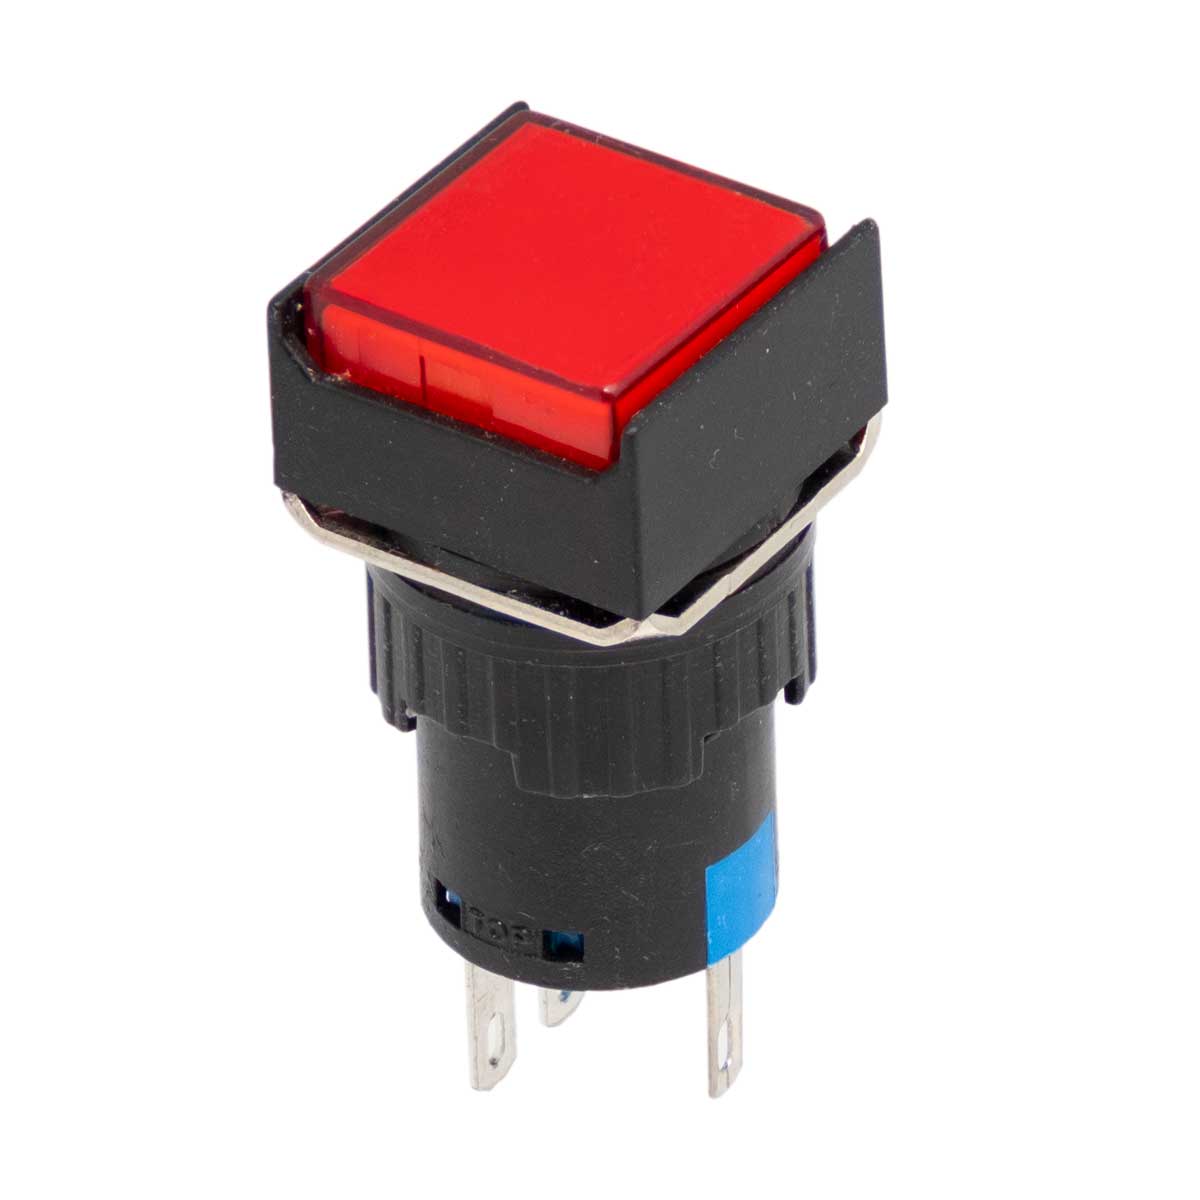 Interrupteur à bouton-poussoir lumineux rouge (SPST), montage sur panneau, 3A/220V